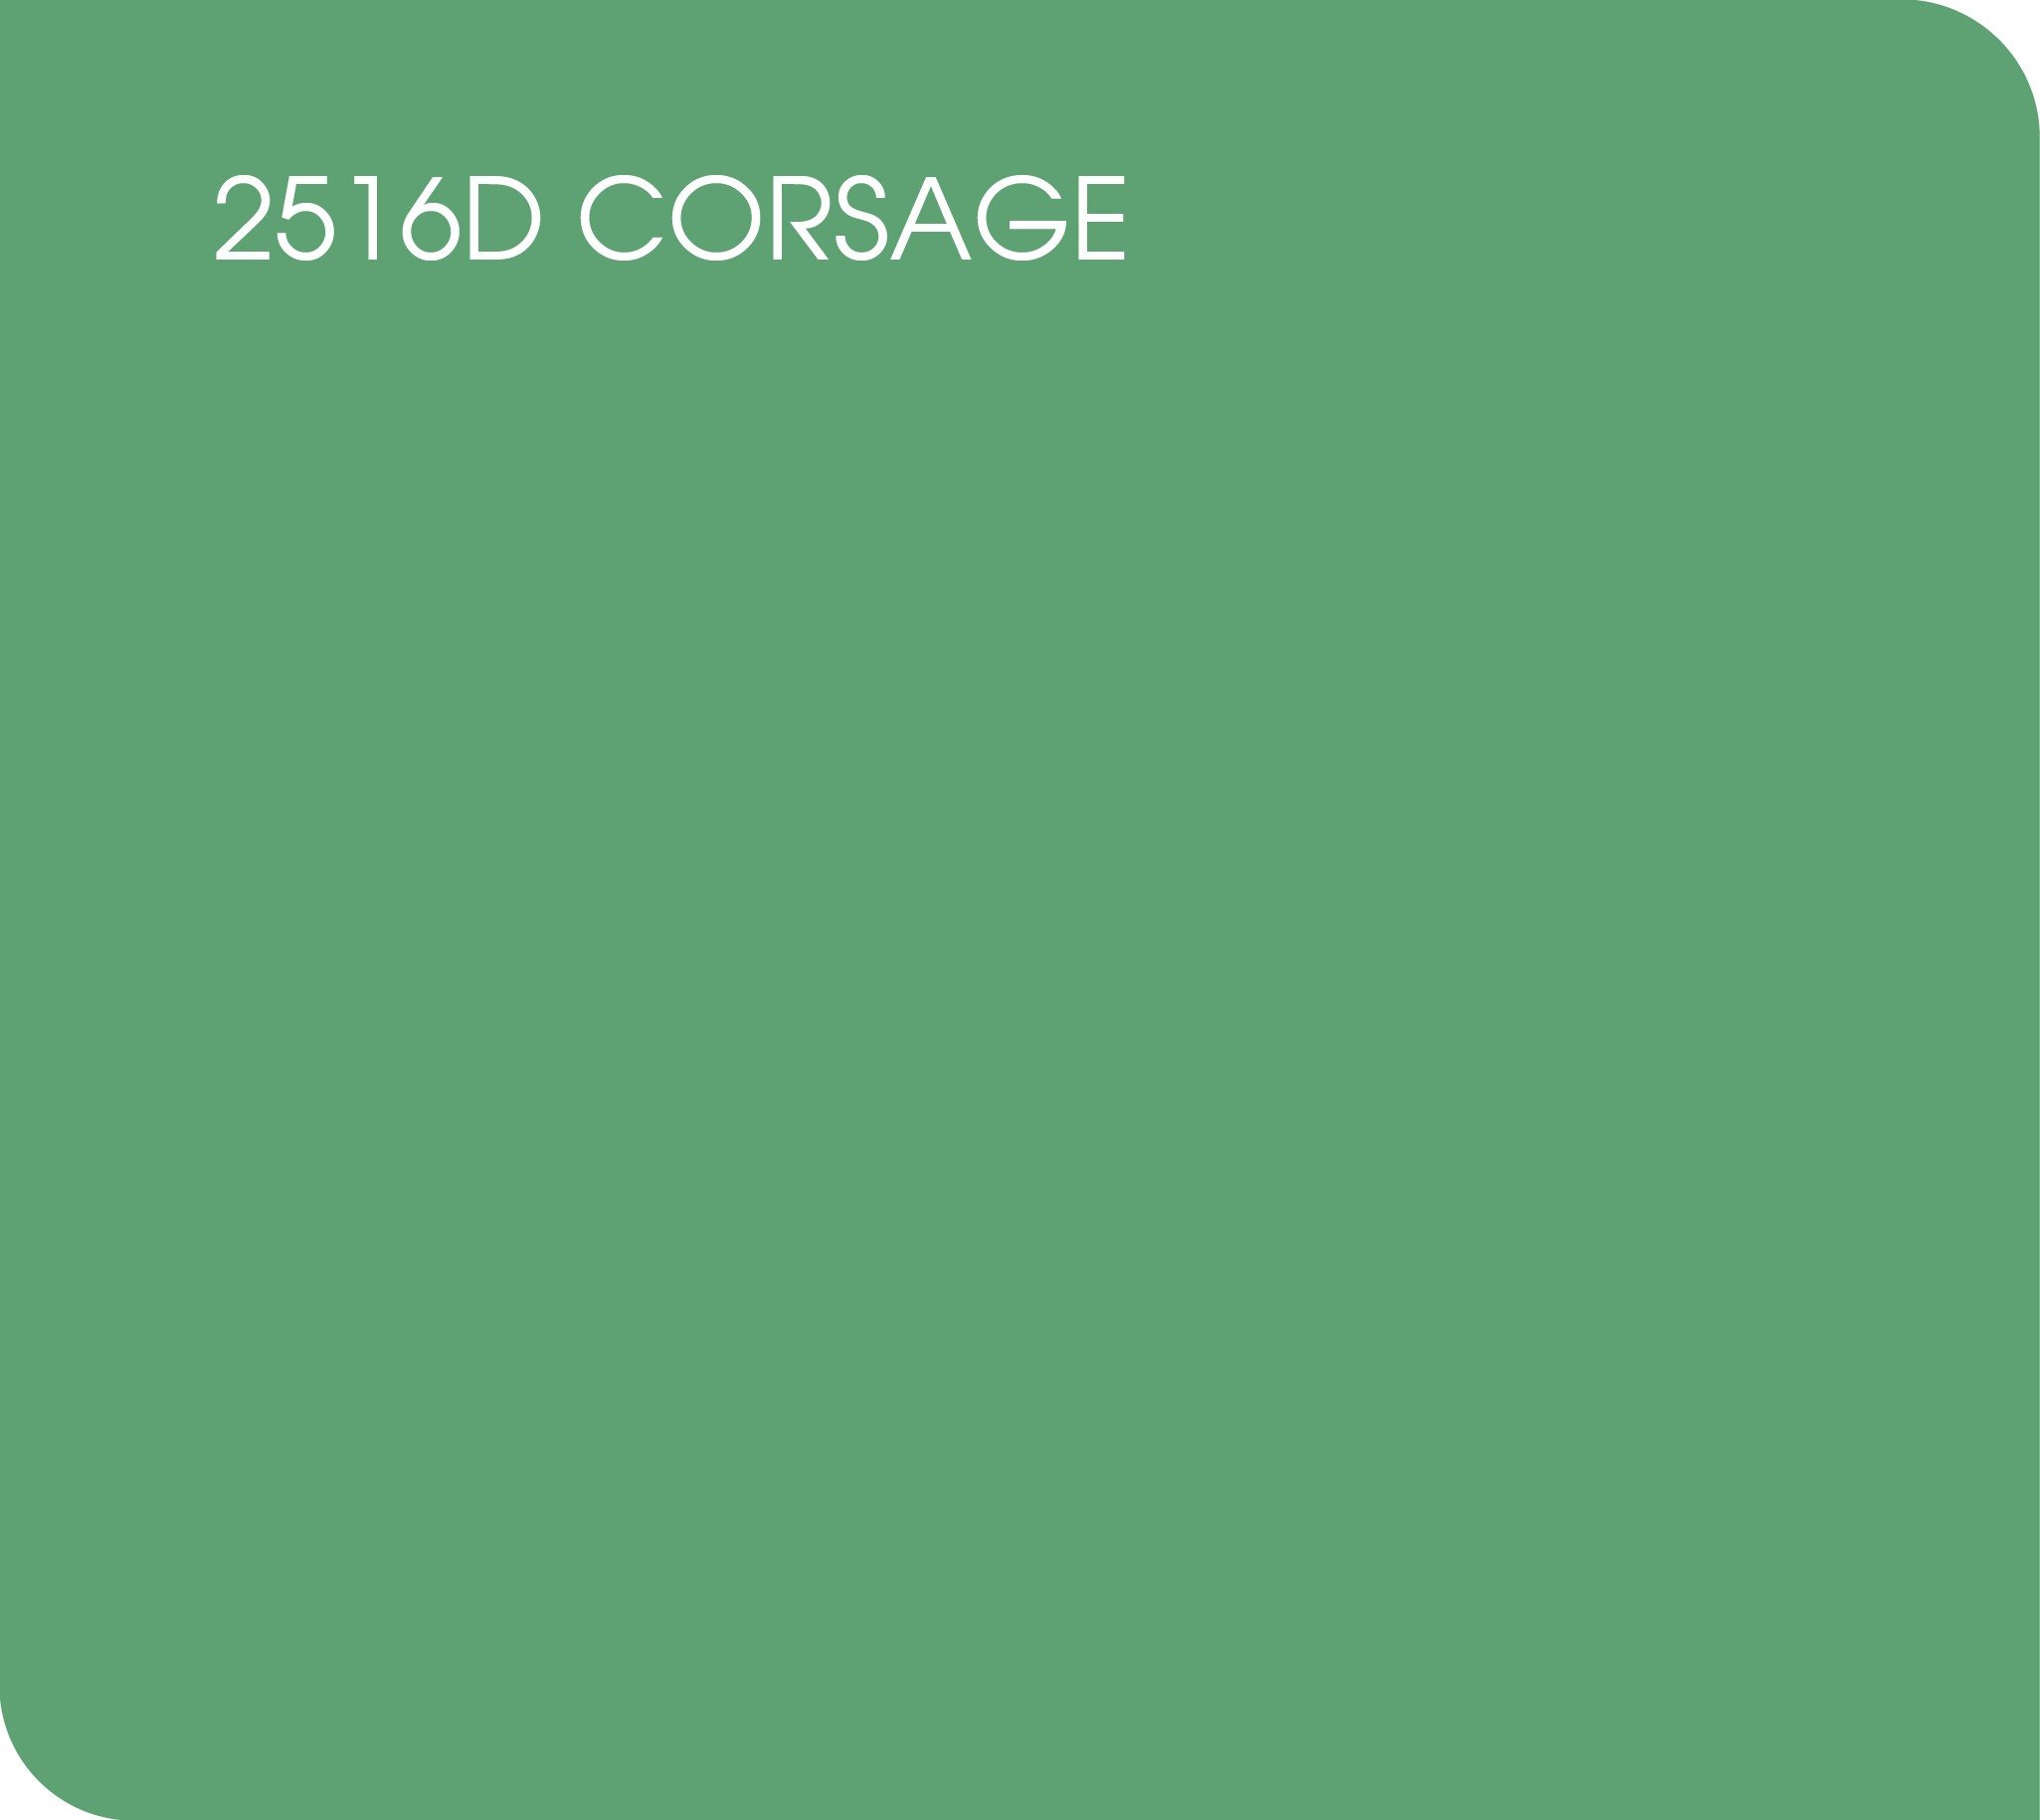 2516D corsage